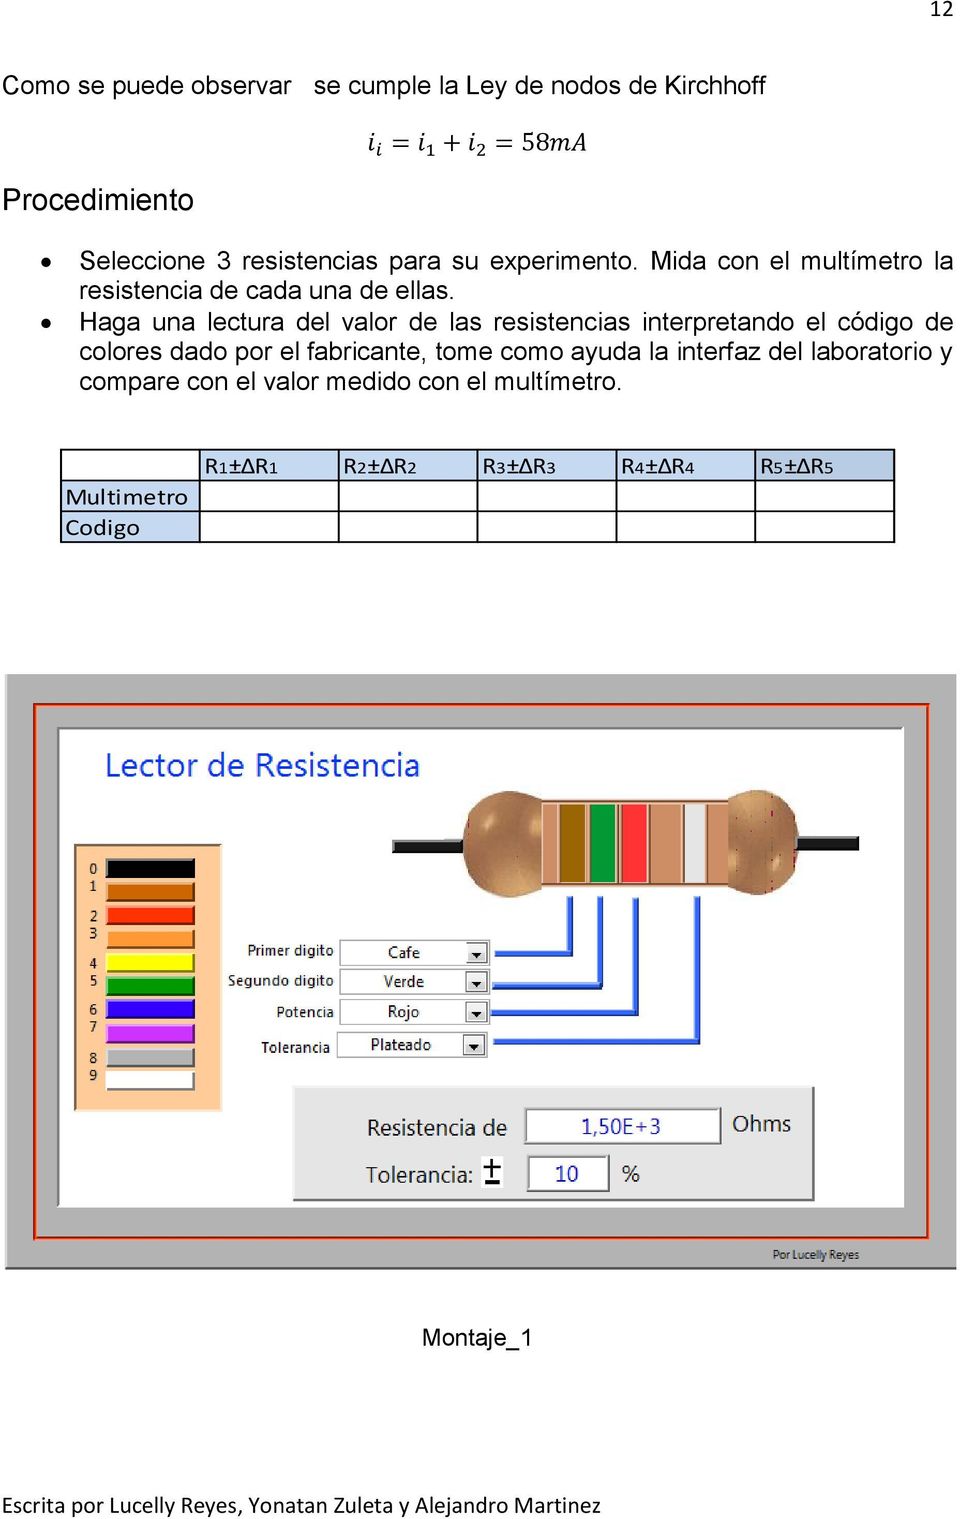 Haga una lectura del valor de las resistencias interpretando el código de colores dado por el fabricante, tome